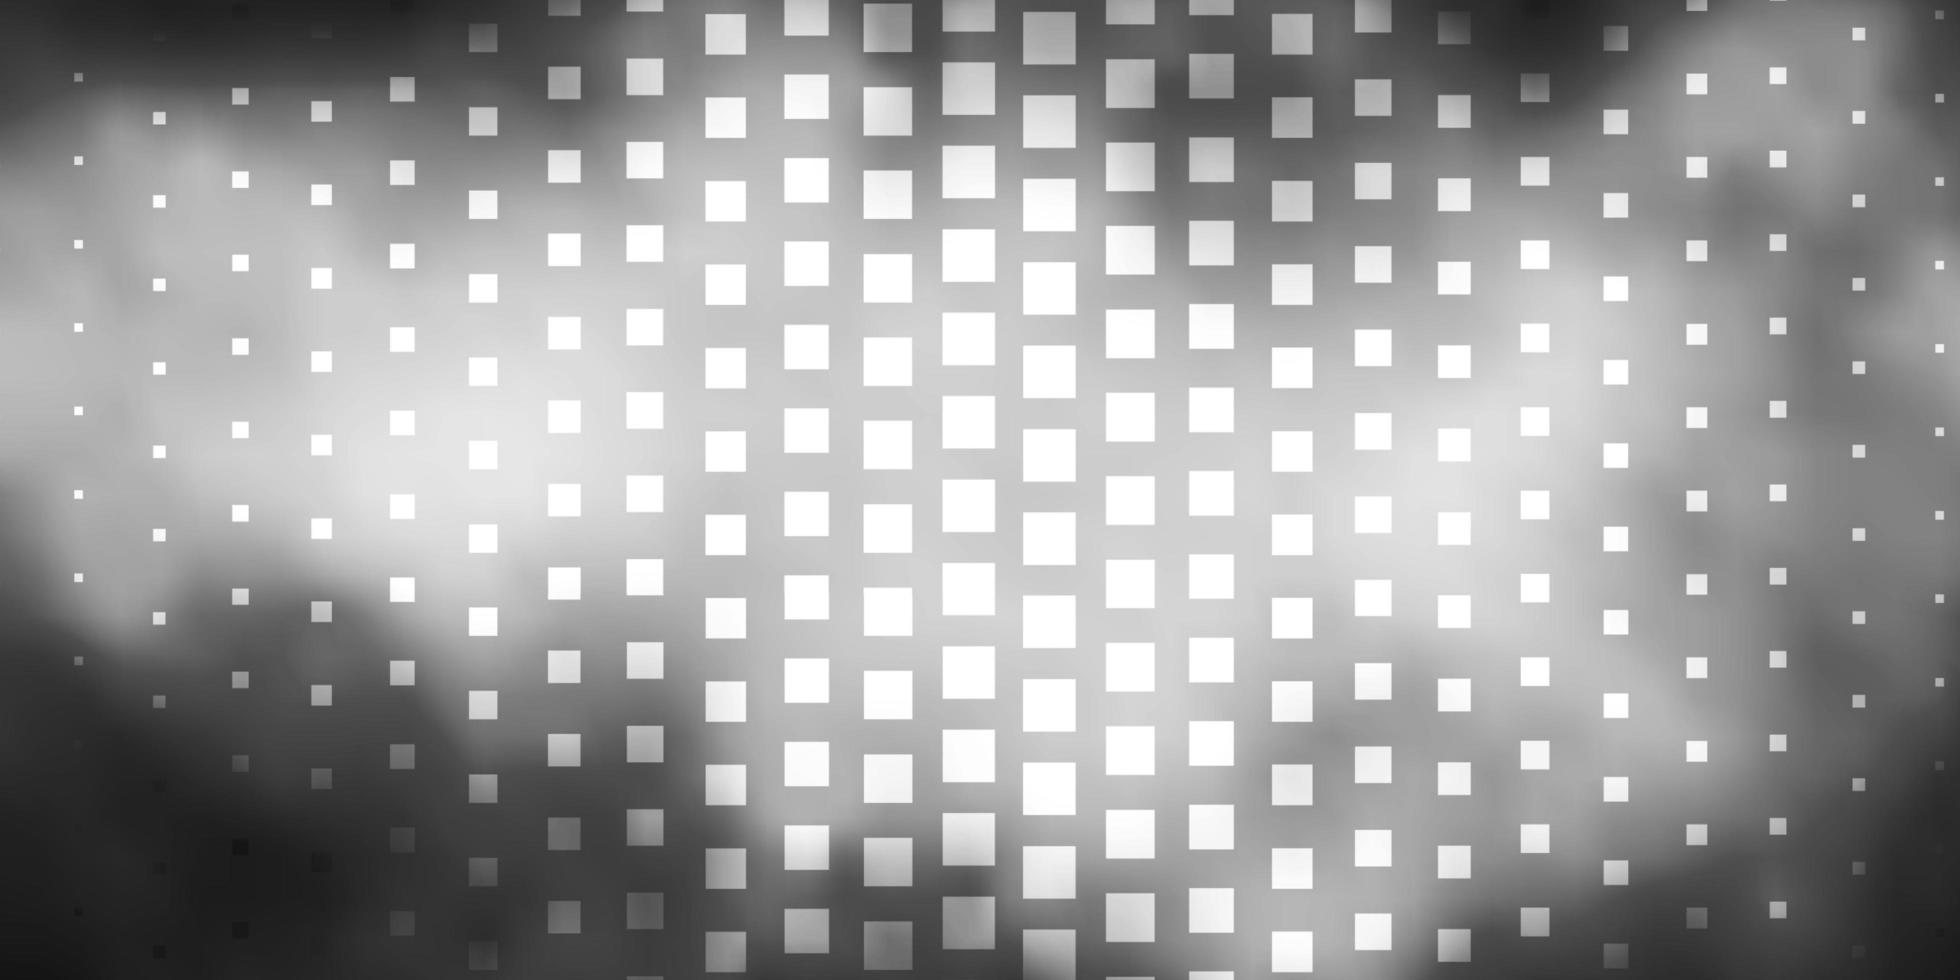 sfondo vettoriale grigio chiaro in stile poligonale